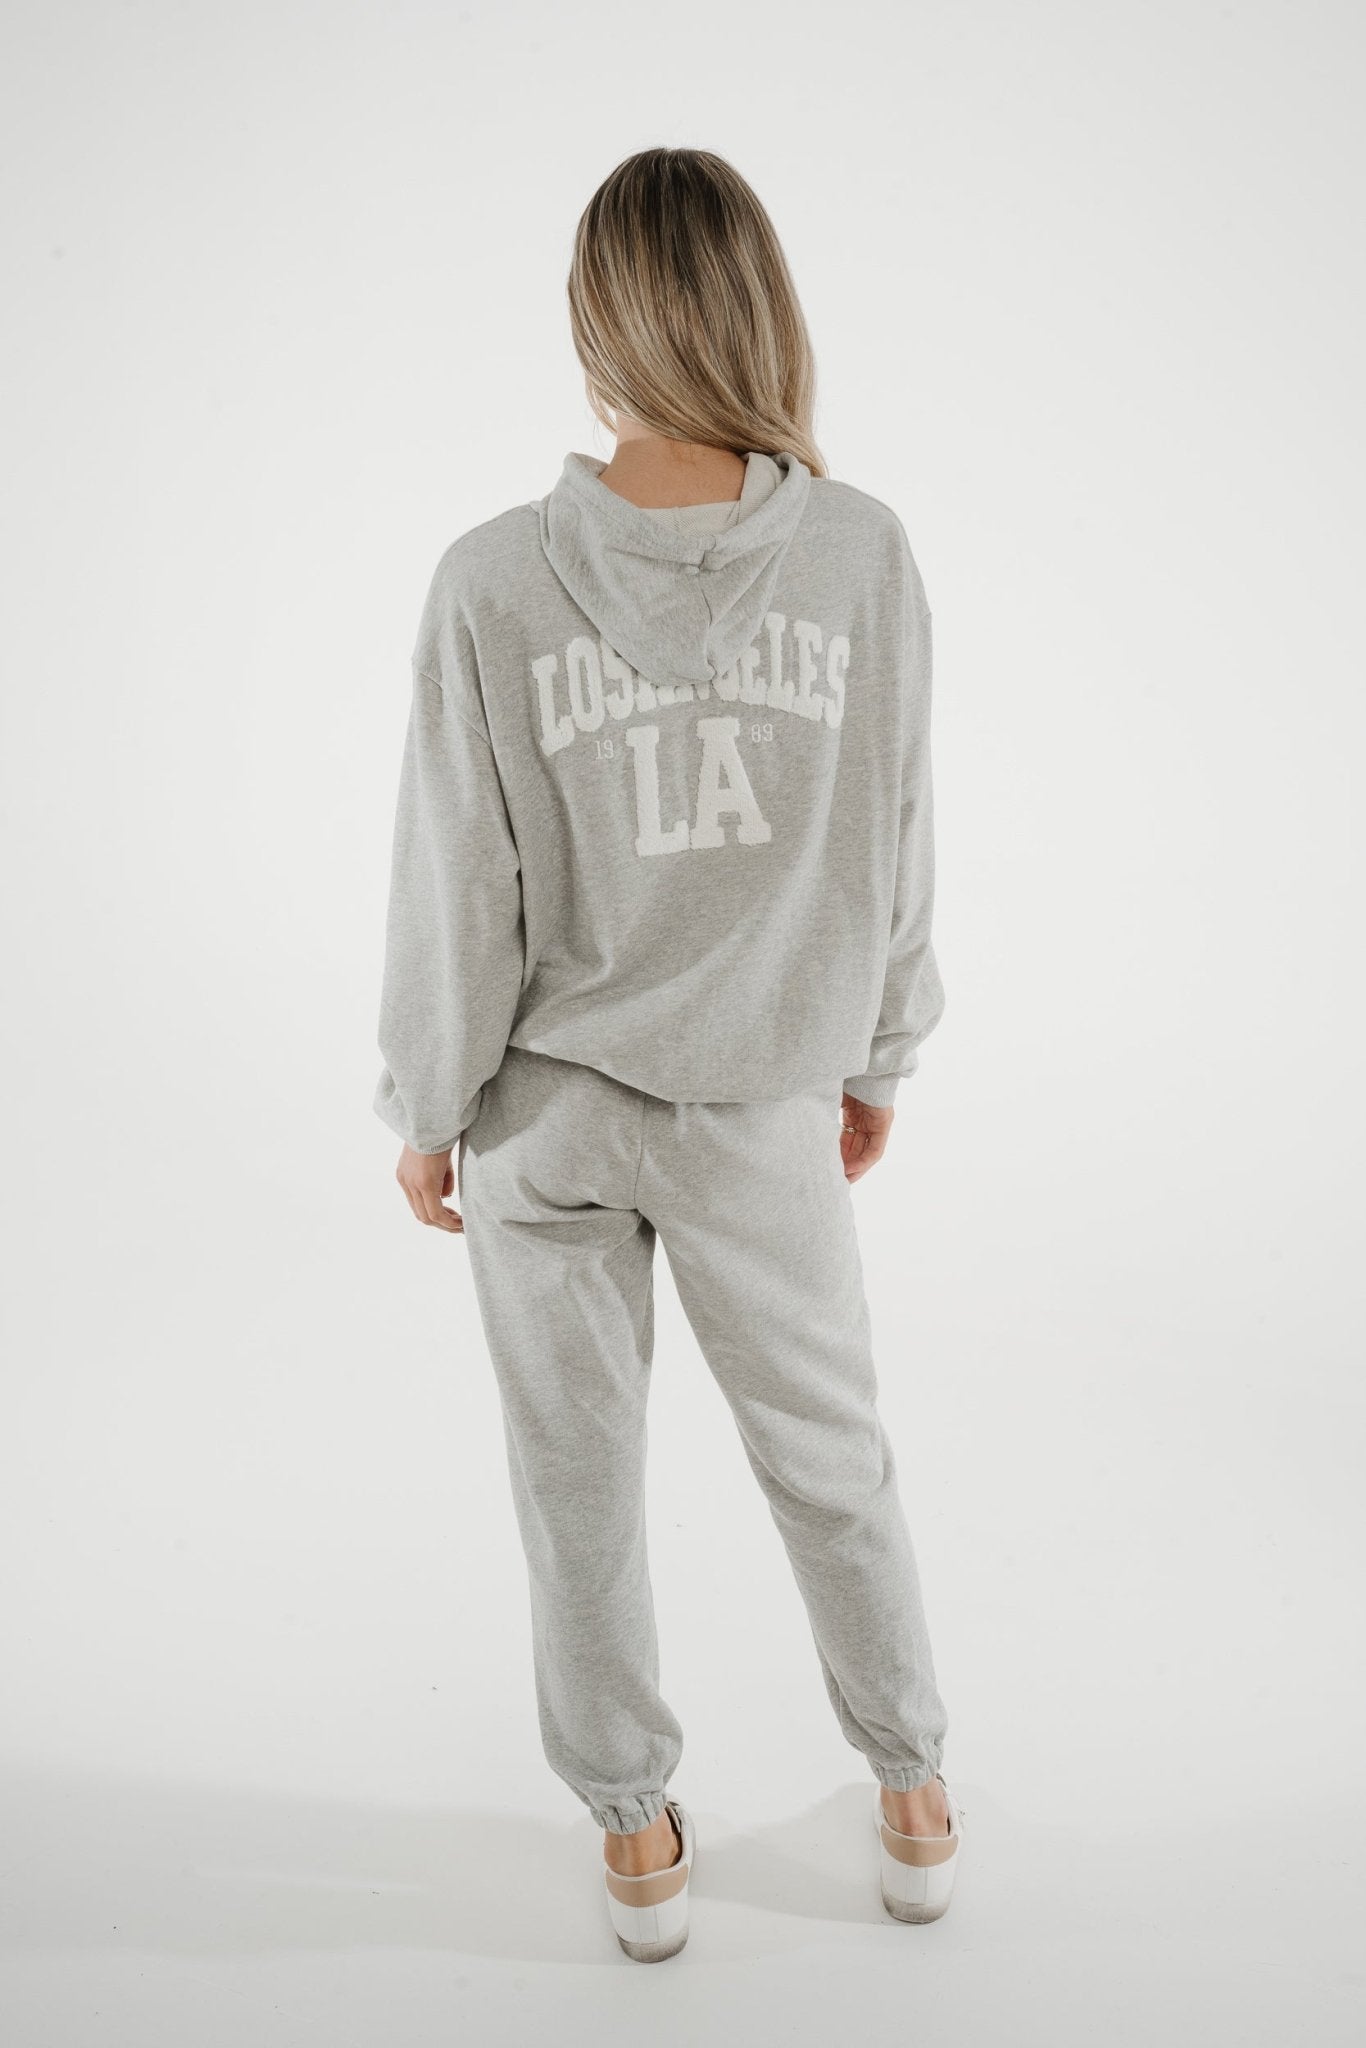 Millie Slogan Hoodie In Grey - The Walk in Wardrobe